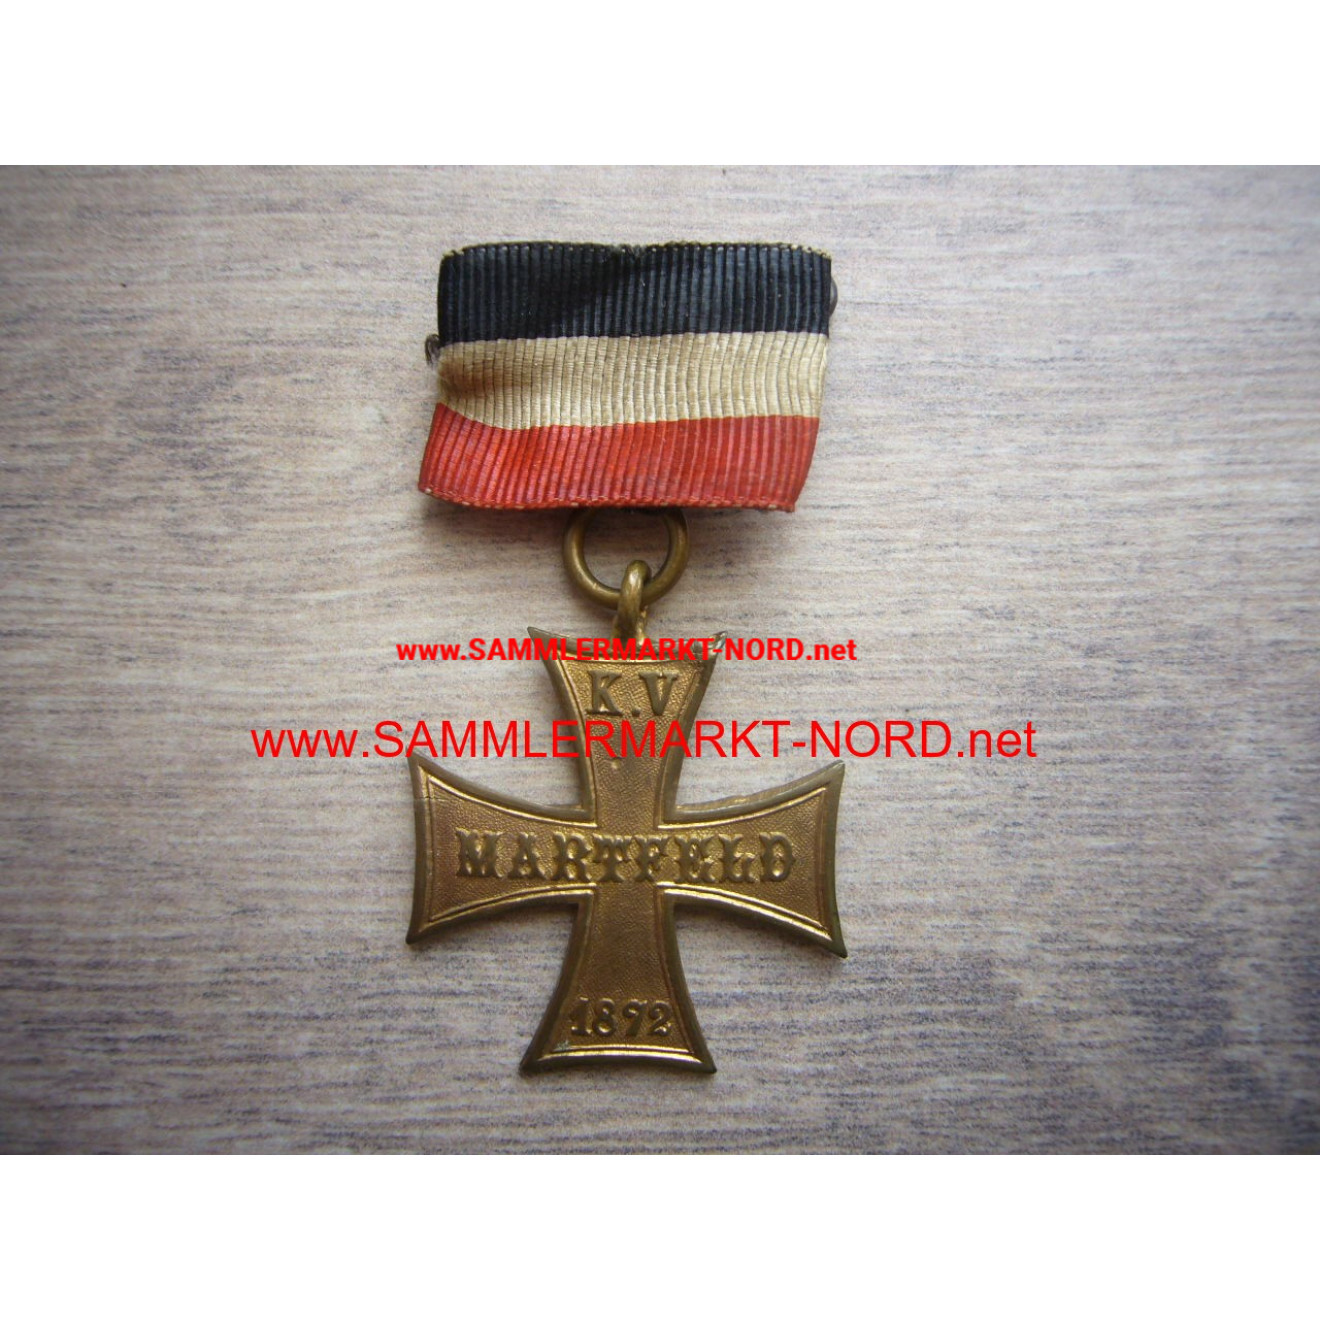 Soldier Association Martfeld 1872 - Cross of Honor